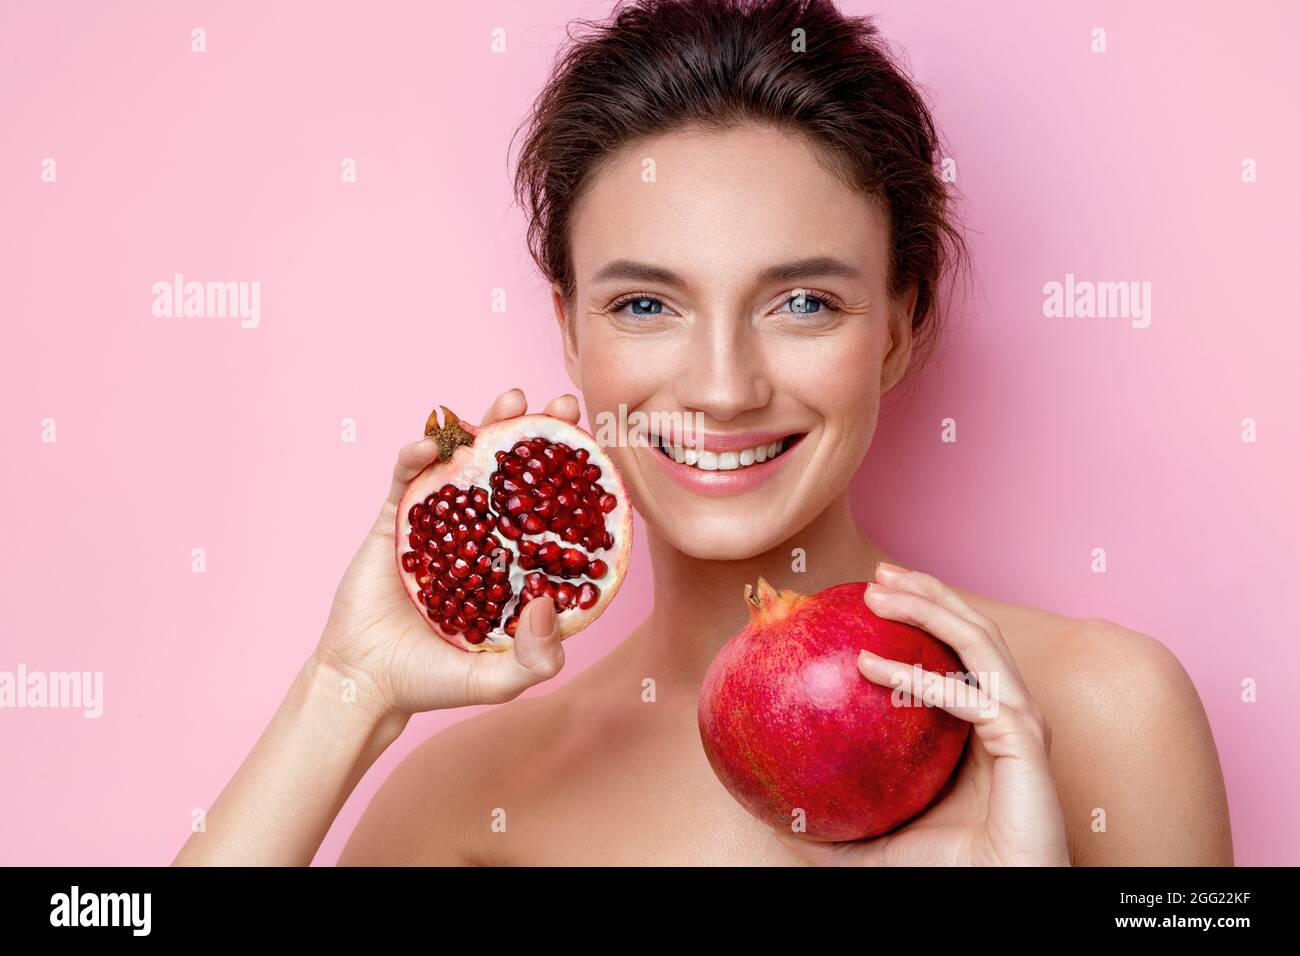 Lachende junge Frau mit Granatäpfeln. Foto von attraktiven Frau mit perfektem Make-up auf rosa Hintergrund. Beauty & Hautpflege Konzept Stockfoto